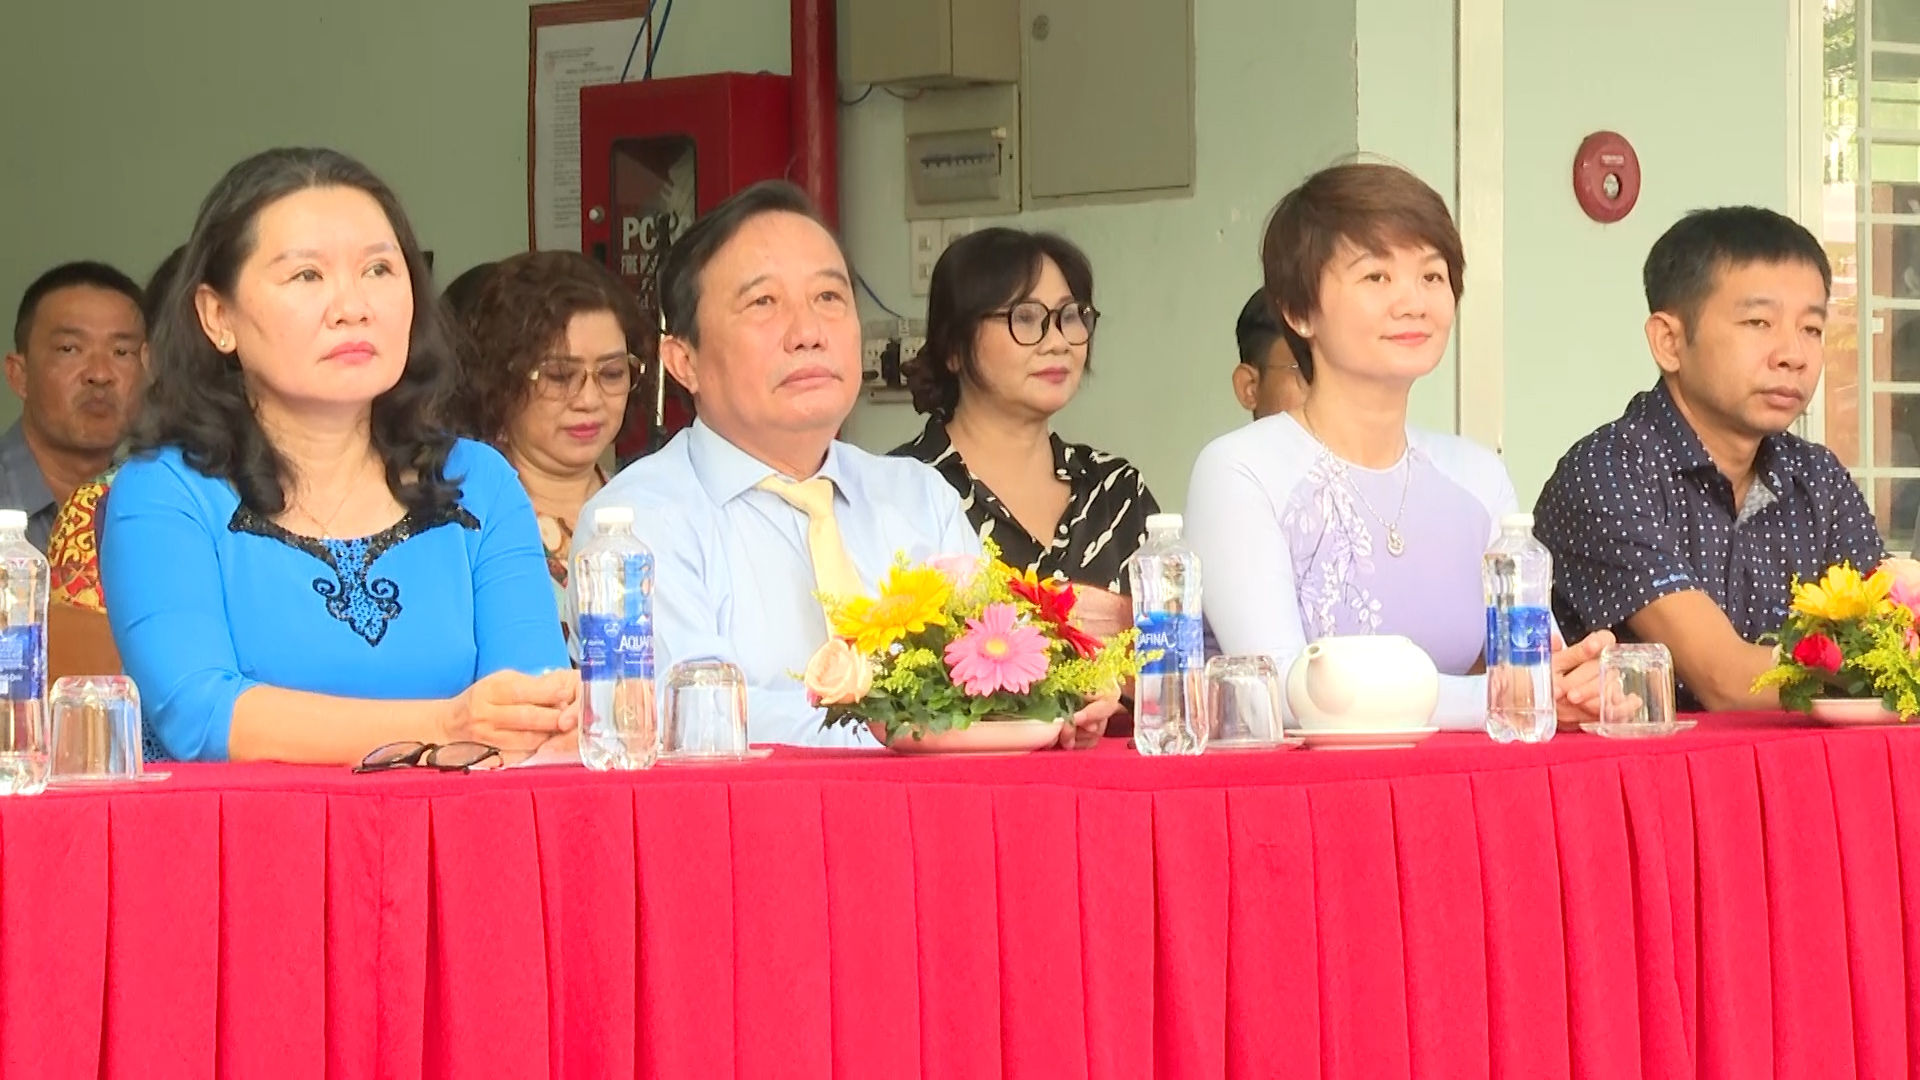 Hình 2: Đồng chí Nguyễn Tiền Phong - Ủy viên Ban Thường vụ Thành ủy – Bí thư Quận ủy Ninh Kiều, tham dự buổi lễ tổng kết